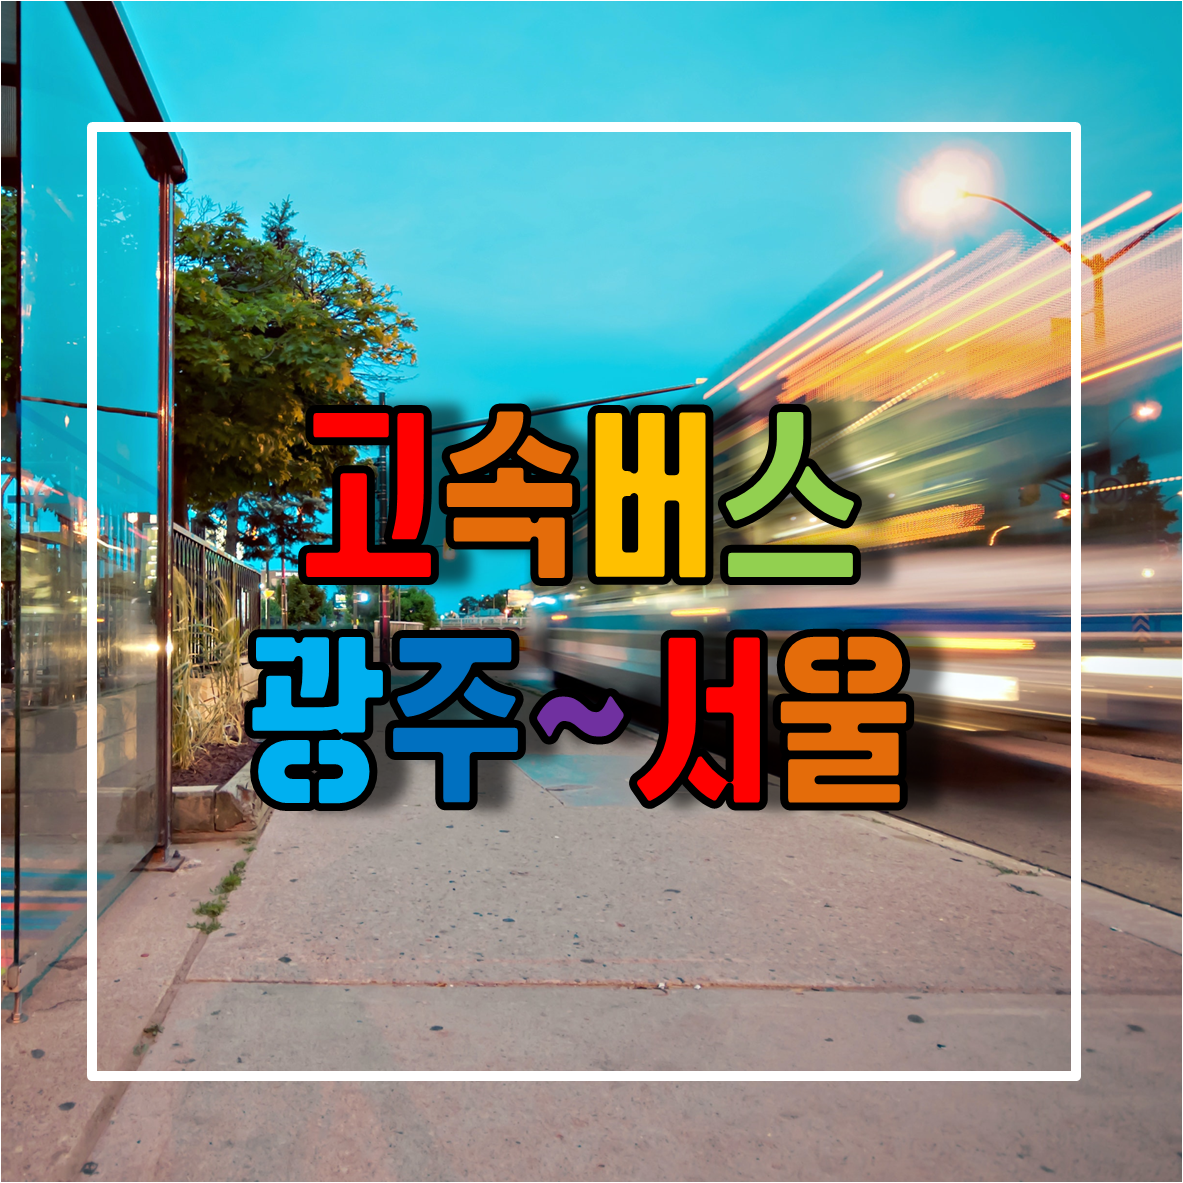 전라도 광주에서 서울가는 고속버스 시간표